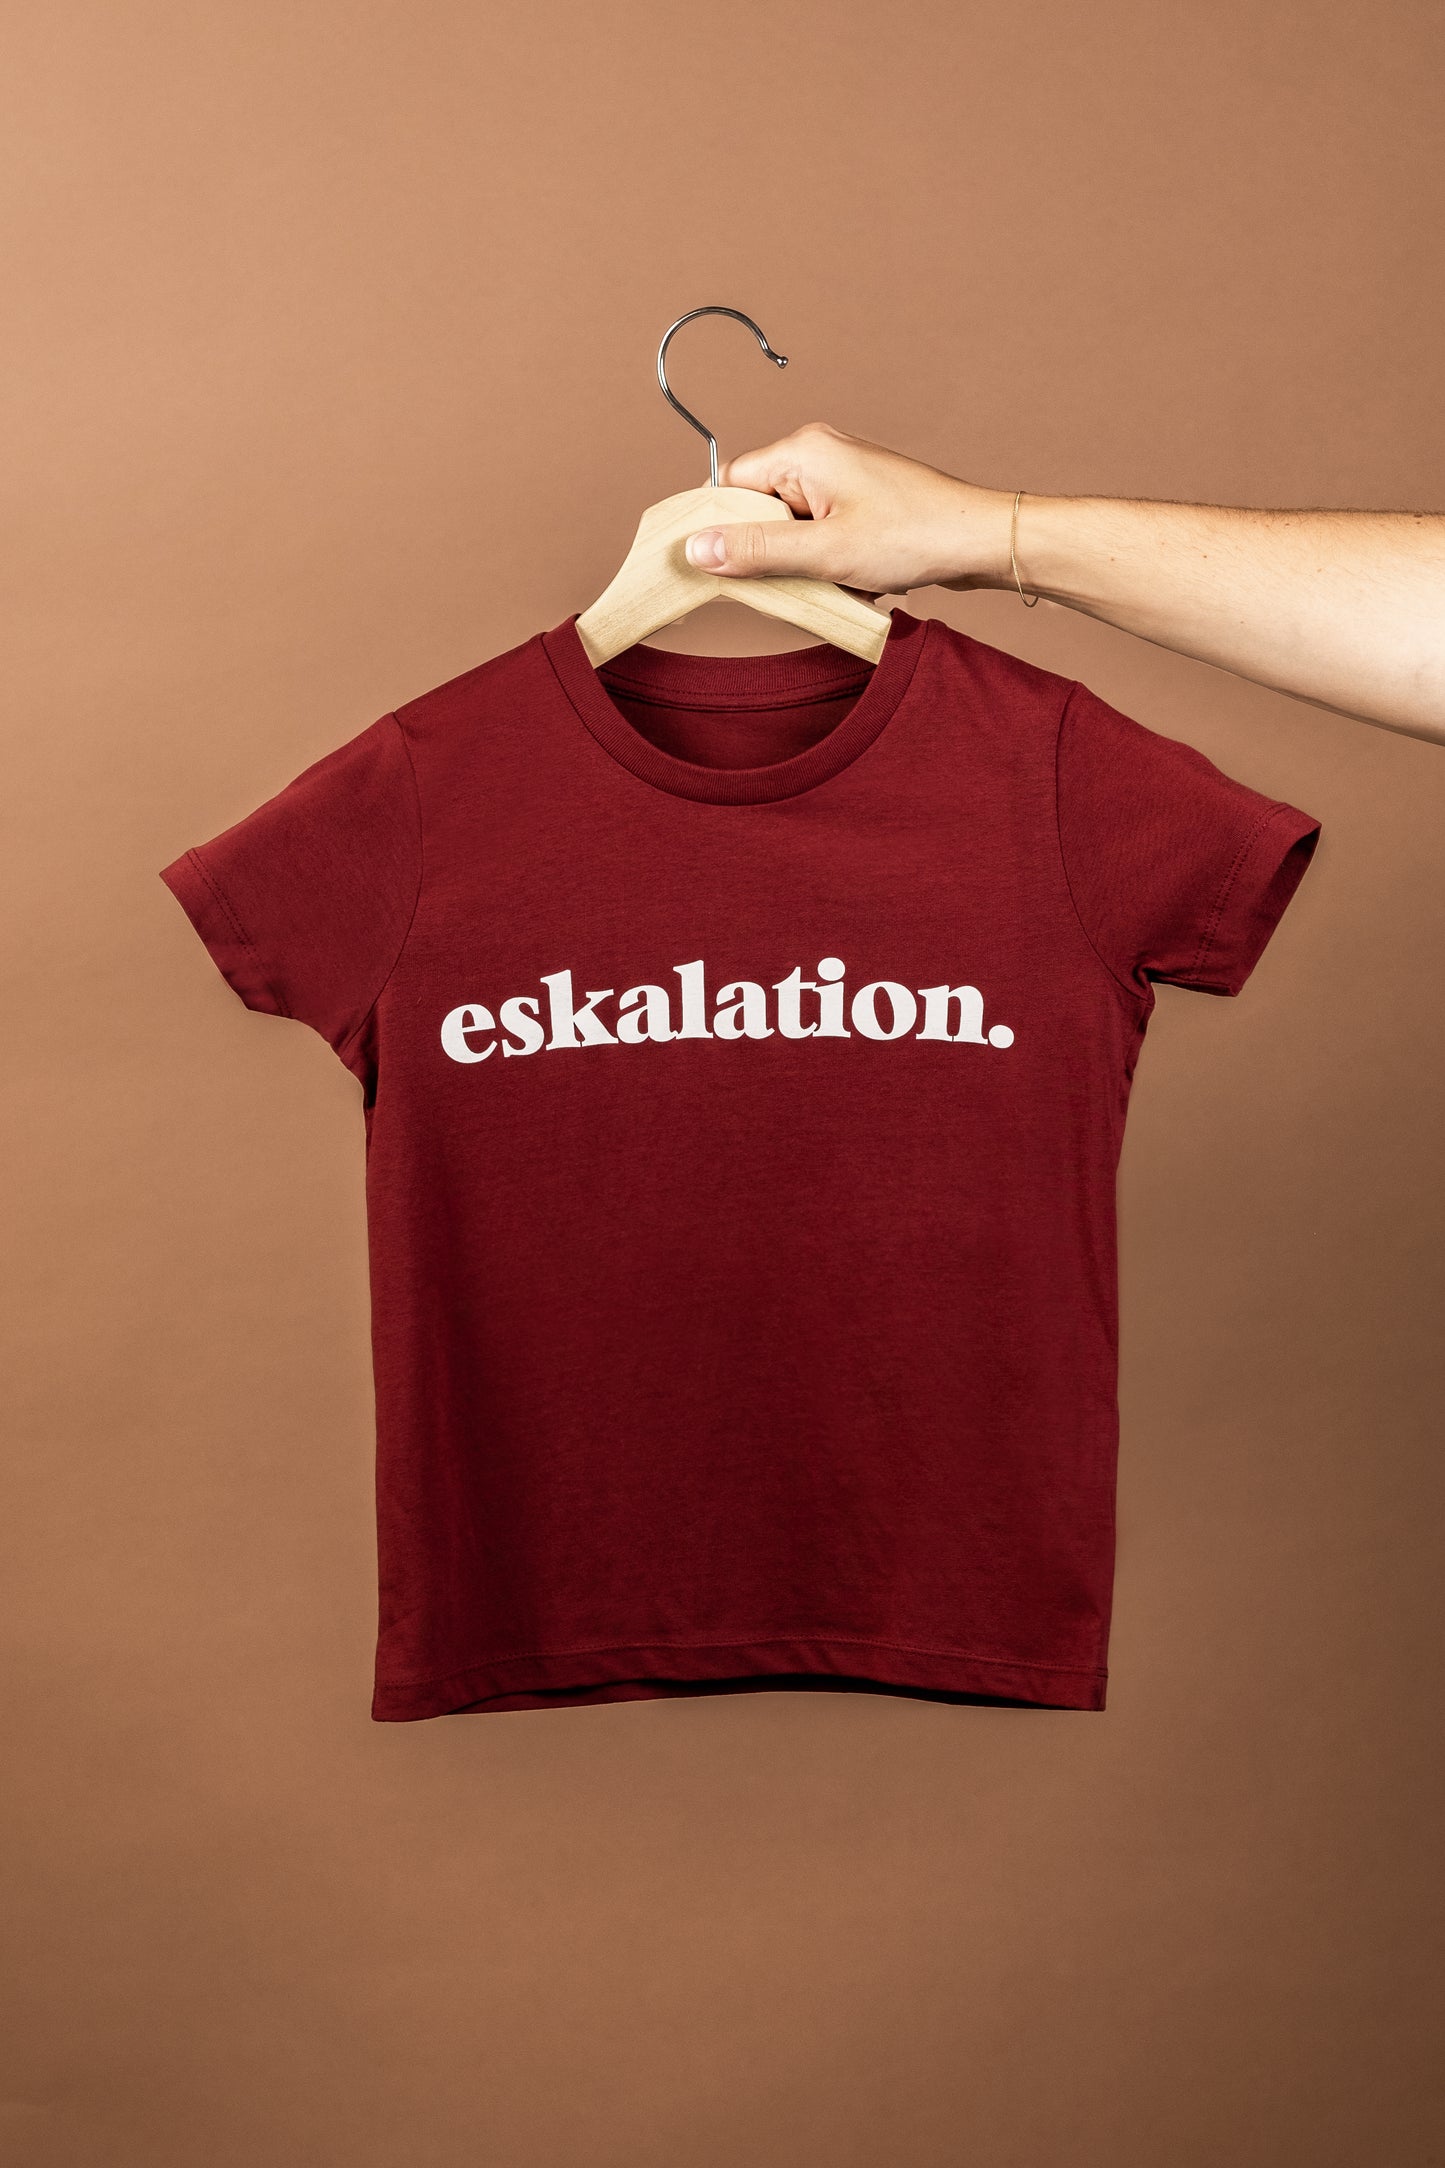 JOSH. Kinder-Shirt "eskalation"